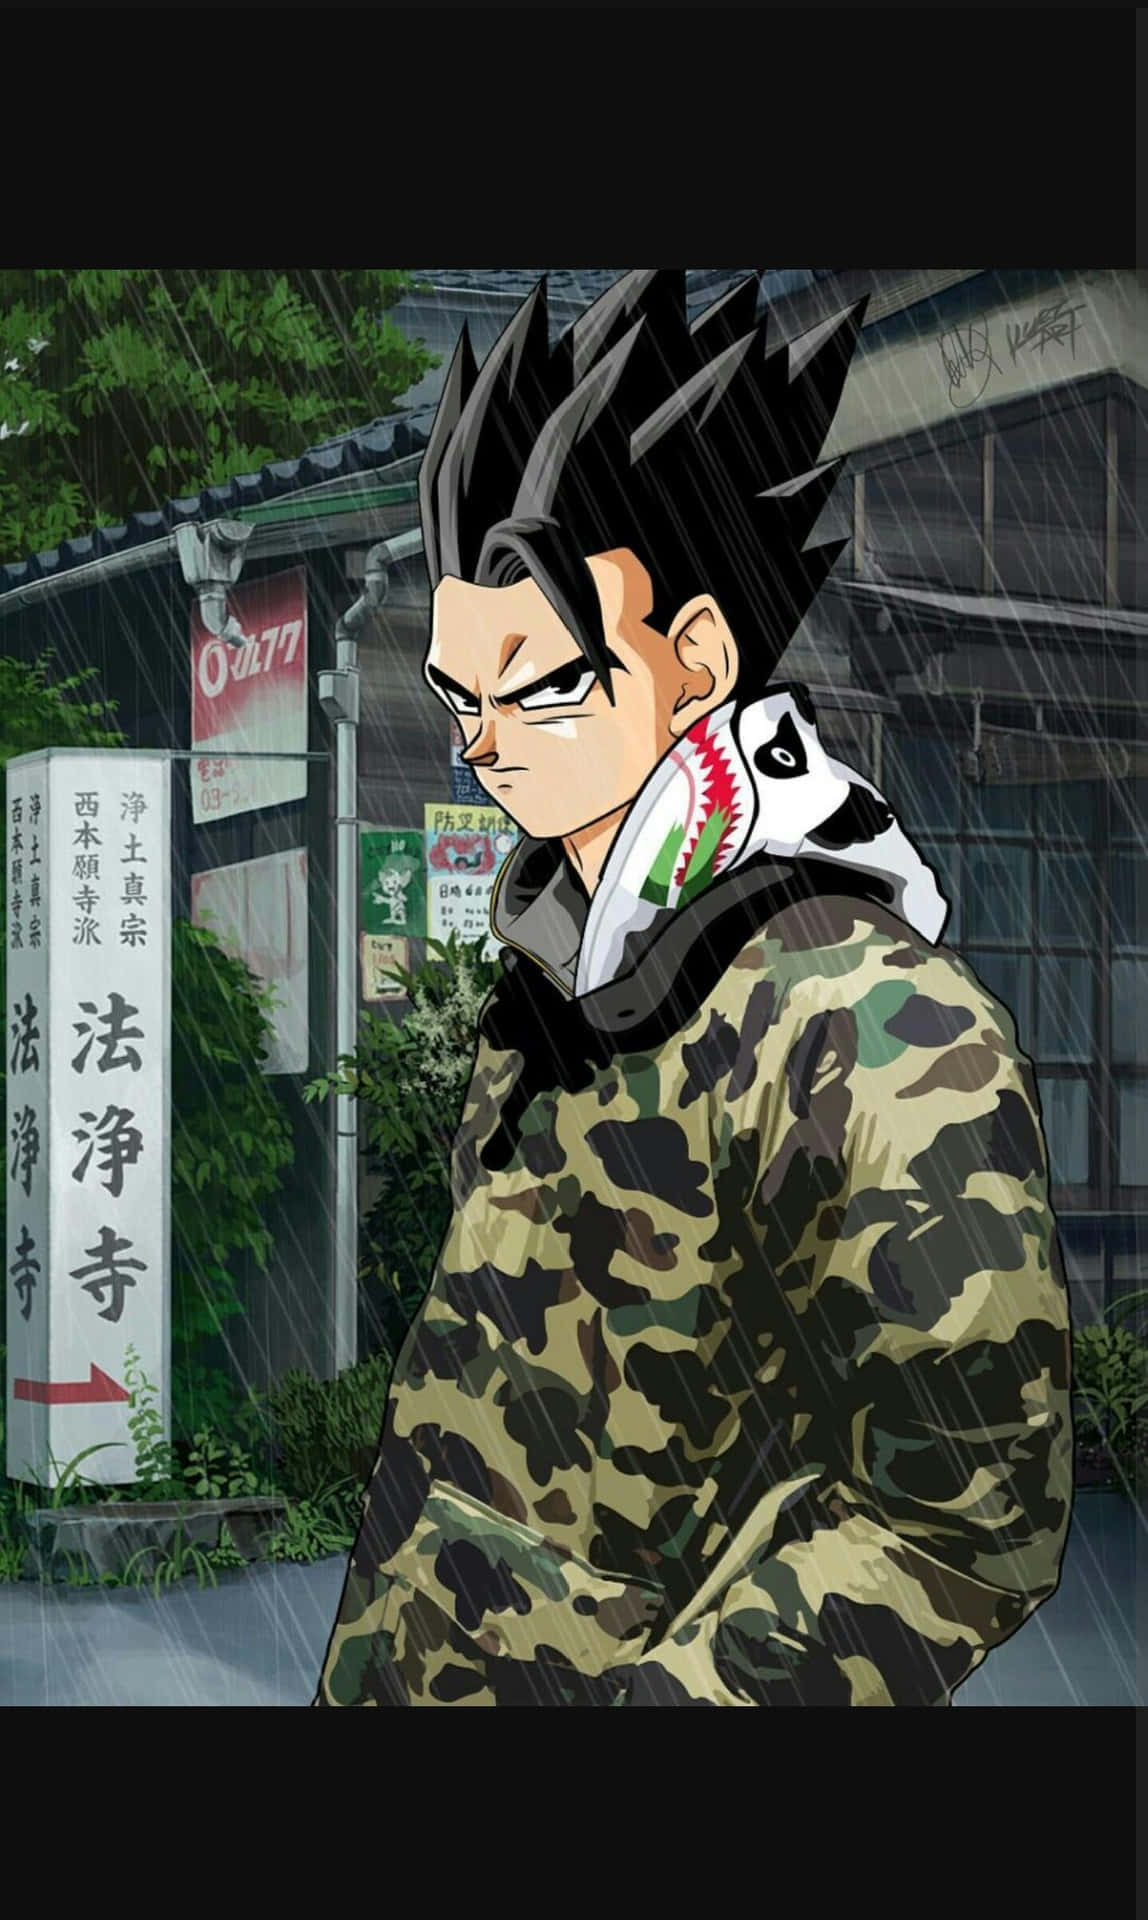 En mand iført camouflage jakke står udenfor. Wallpaper